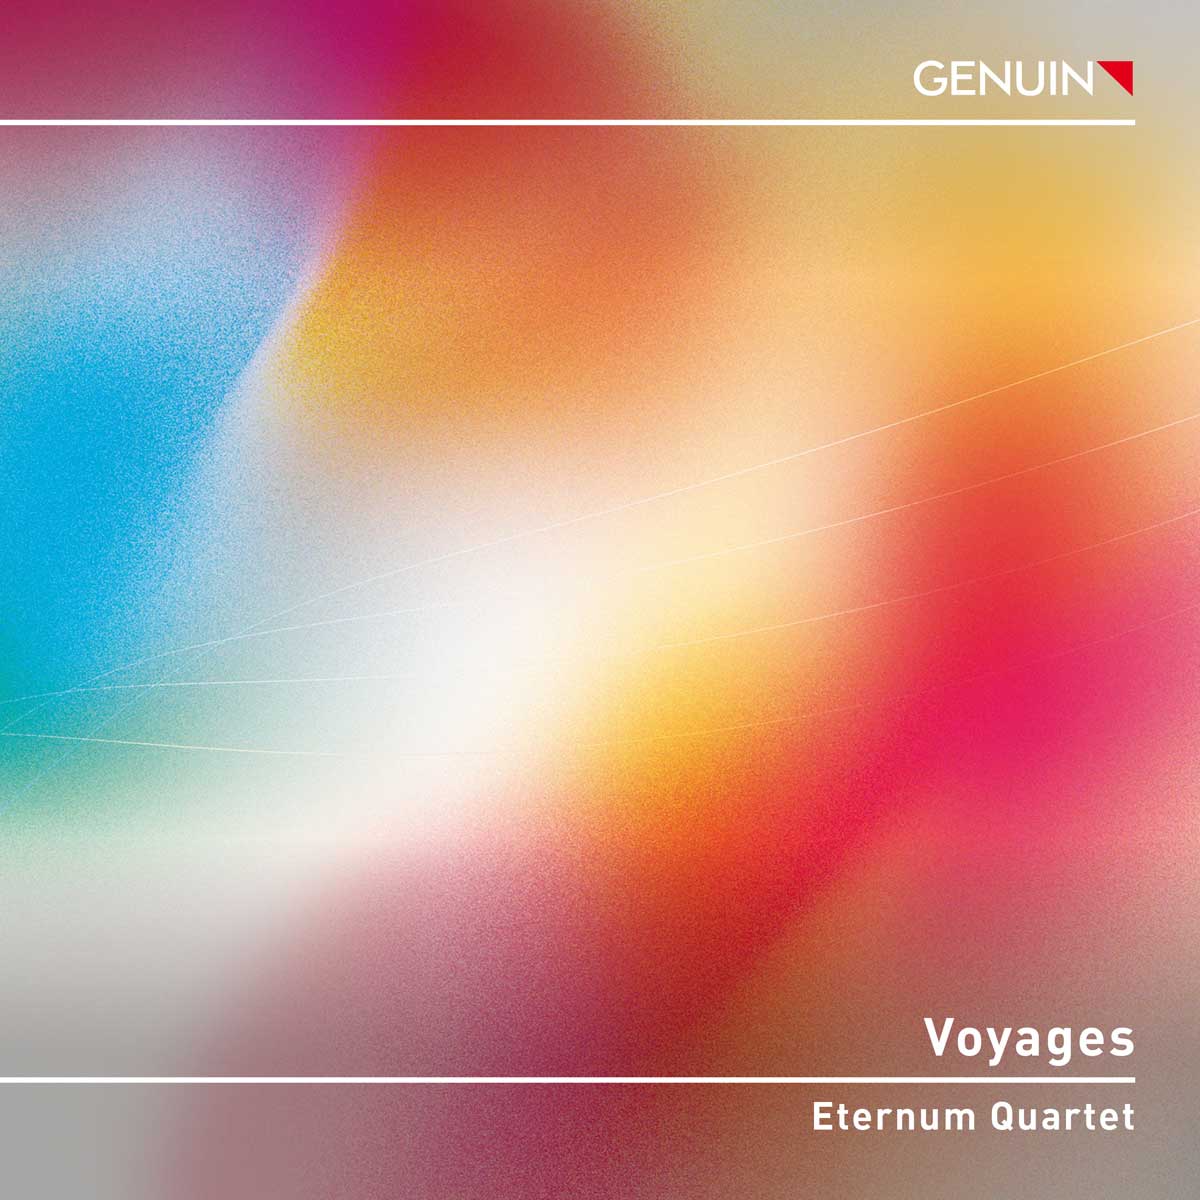 CD album cover 'Voyages' (GEN 23835) with Eternum Quartet